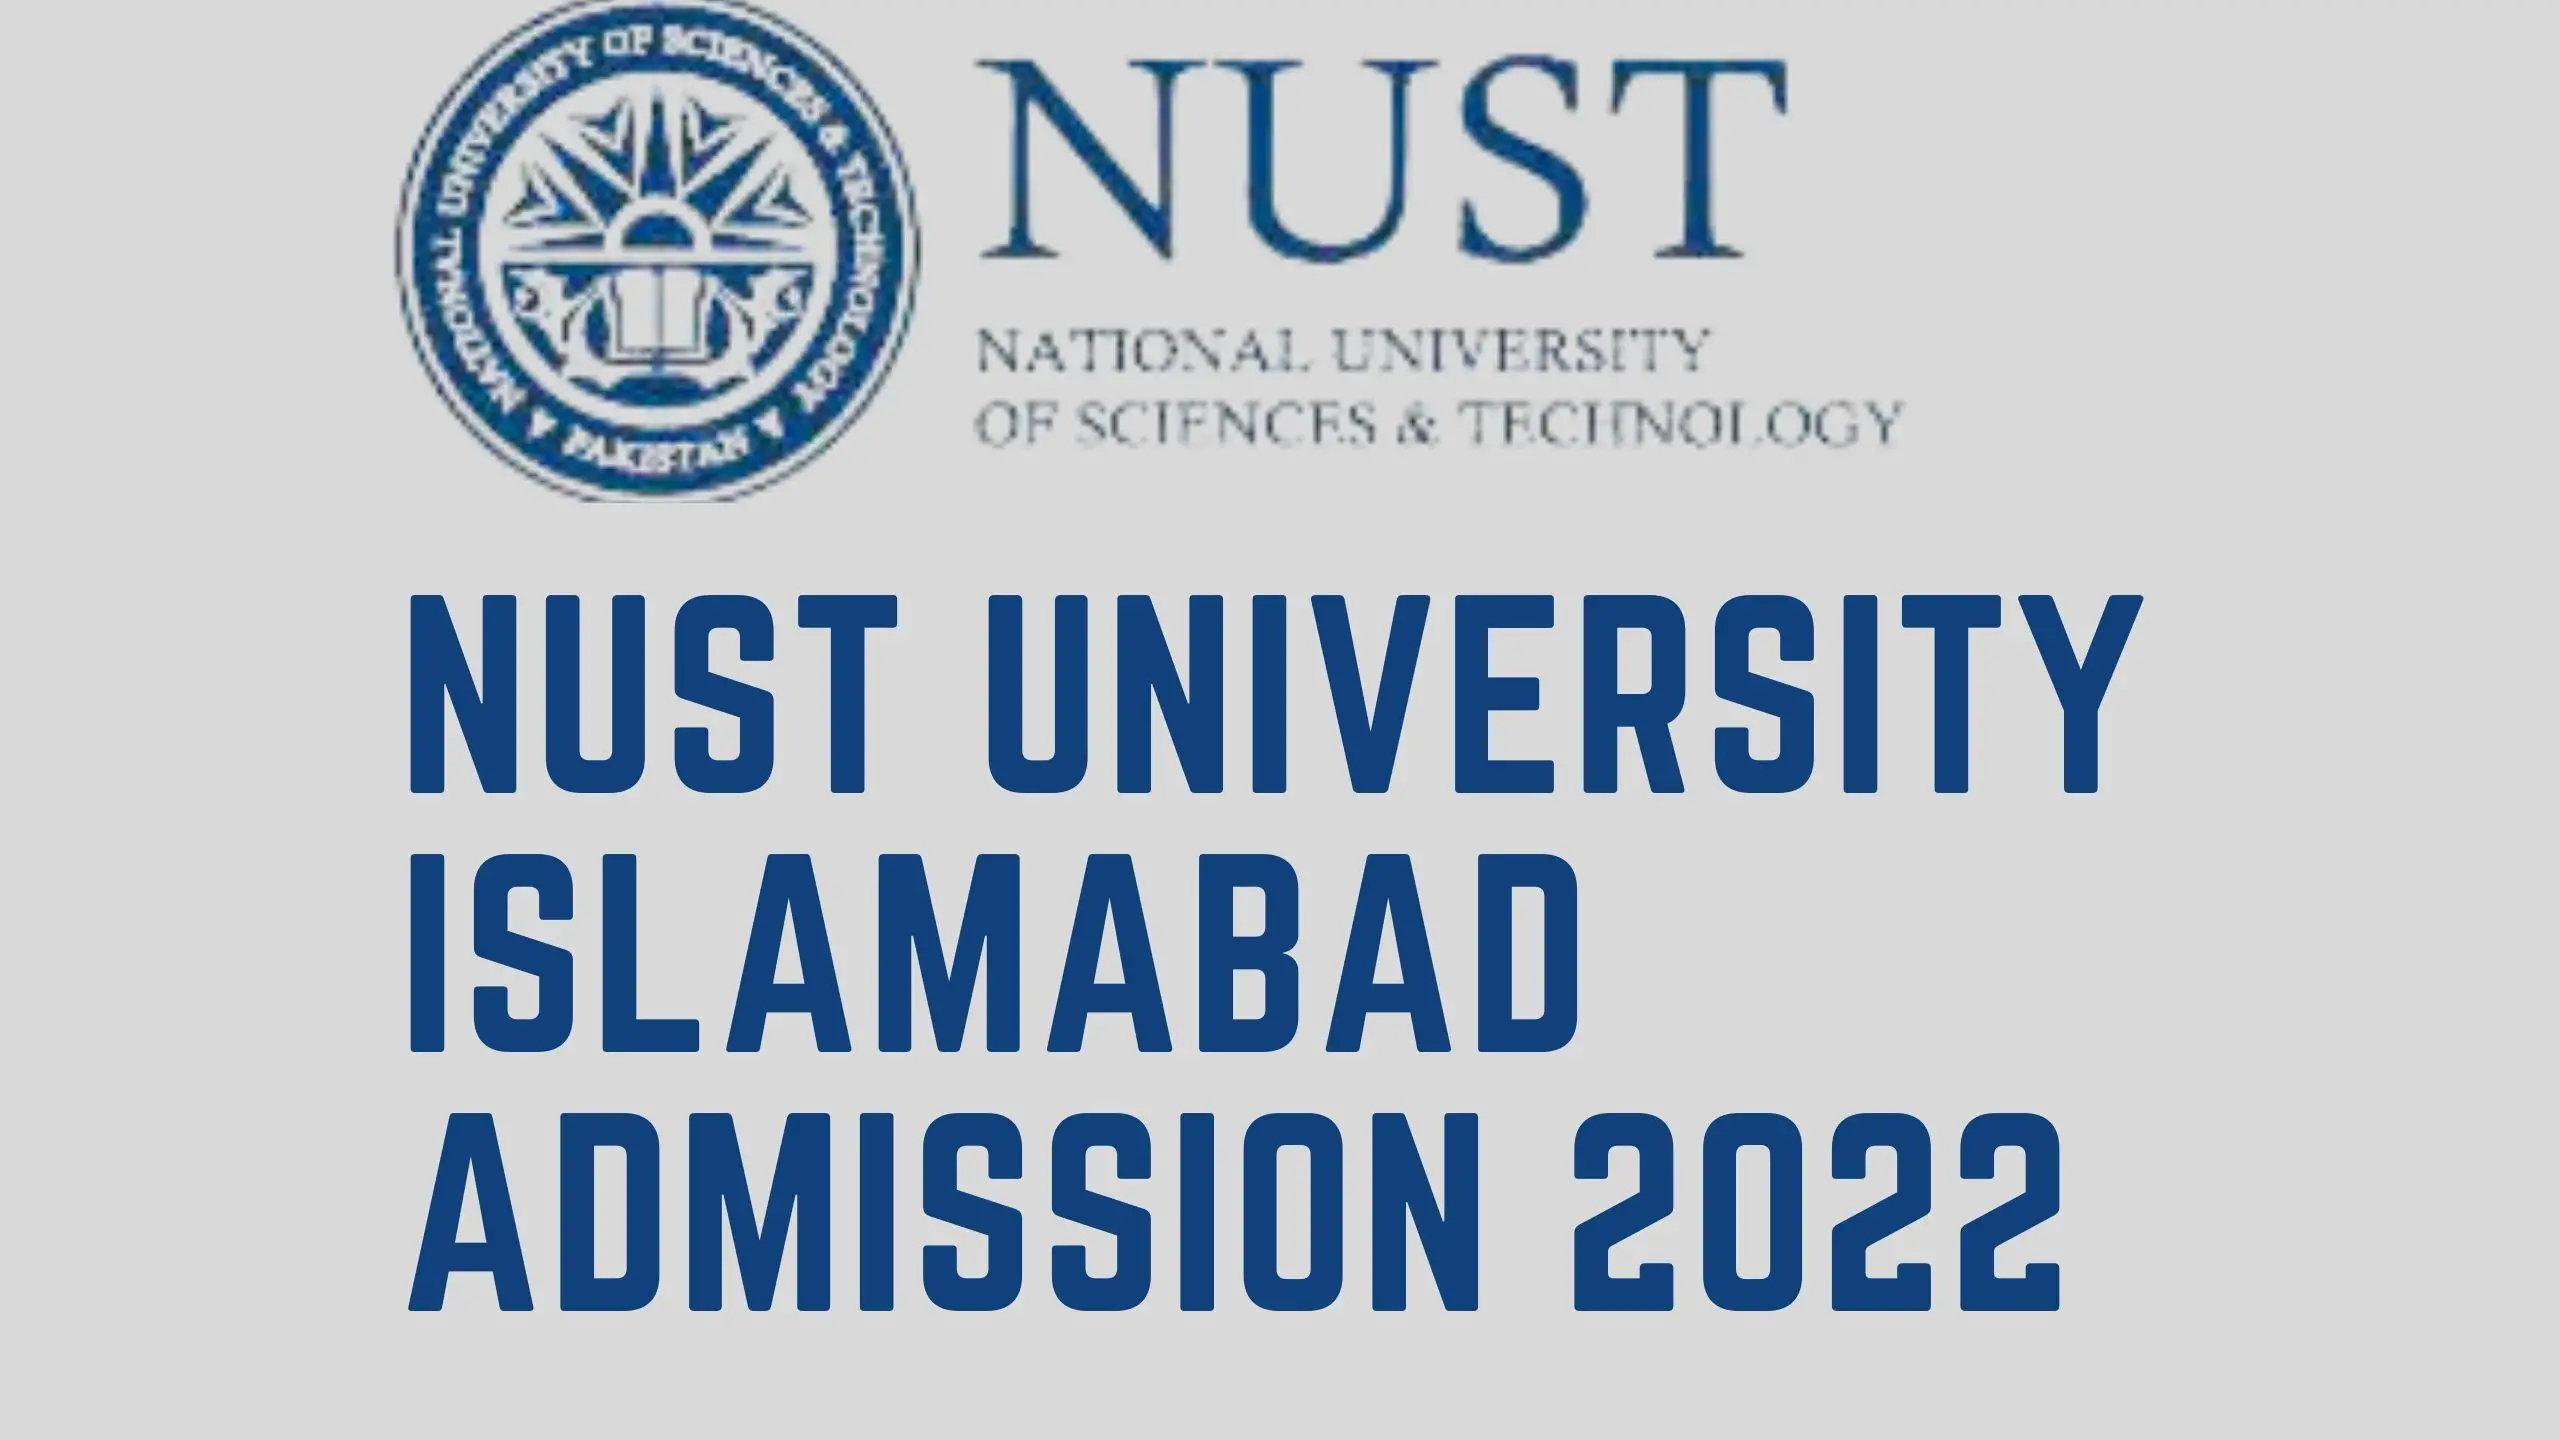 Nust University Islamabad Admission 2022